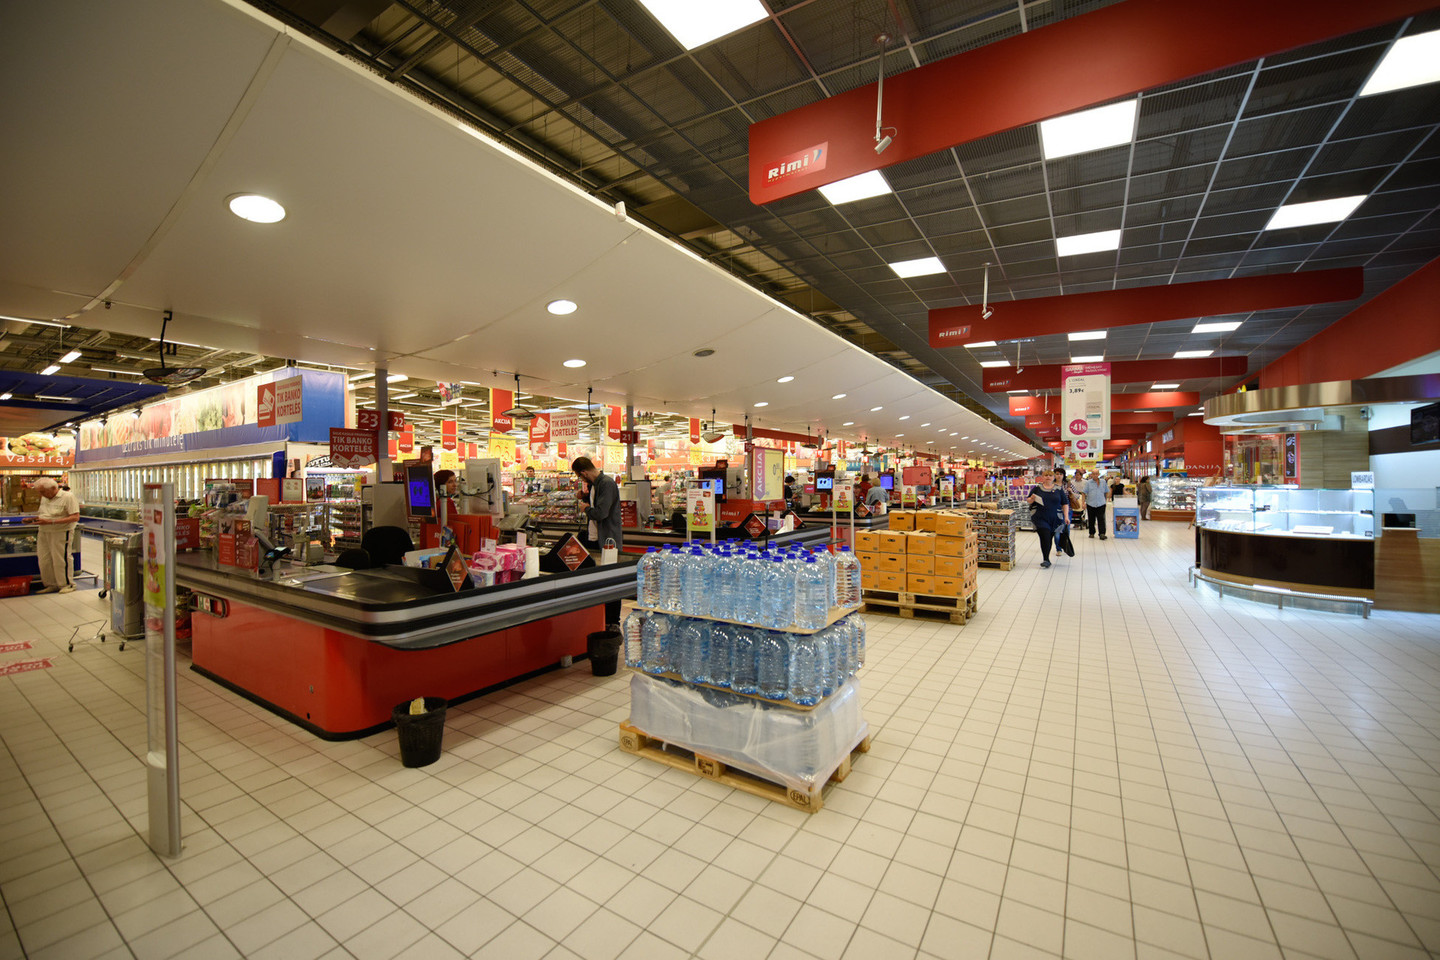 Parduotuvės – apytuštės, o jų atsakas į vartotojų boikotą – didžiulės nuolaidos.<br>D.Umbraso nuotr.